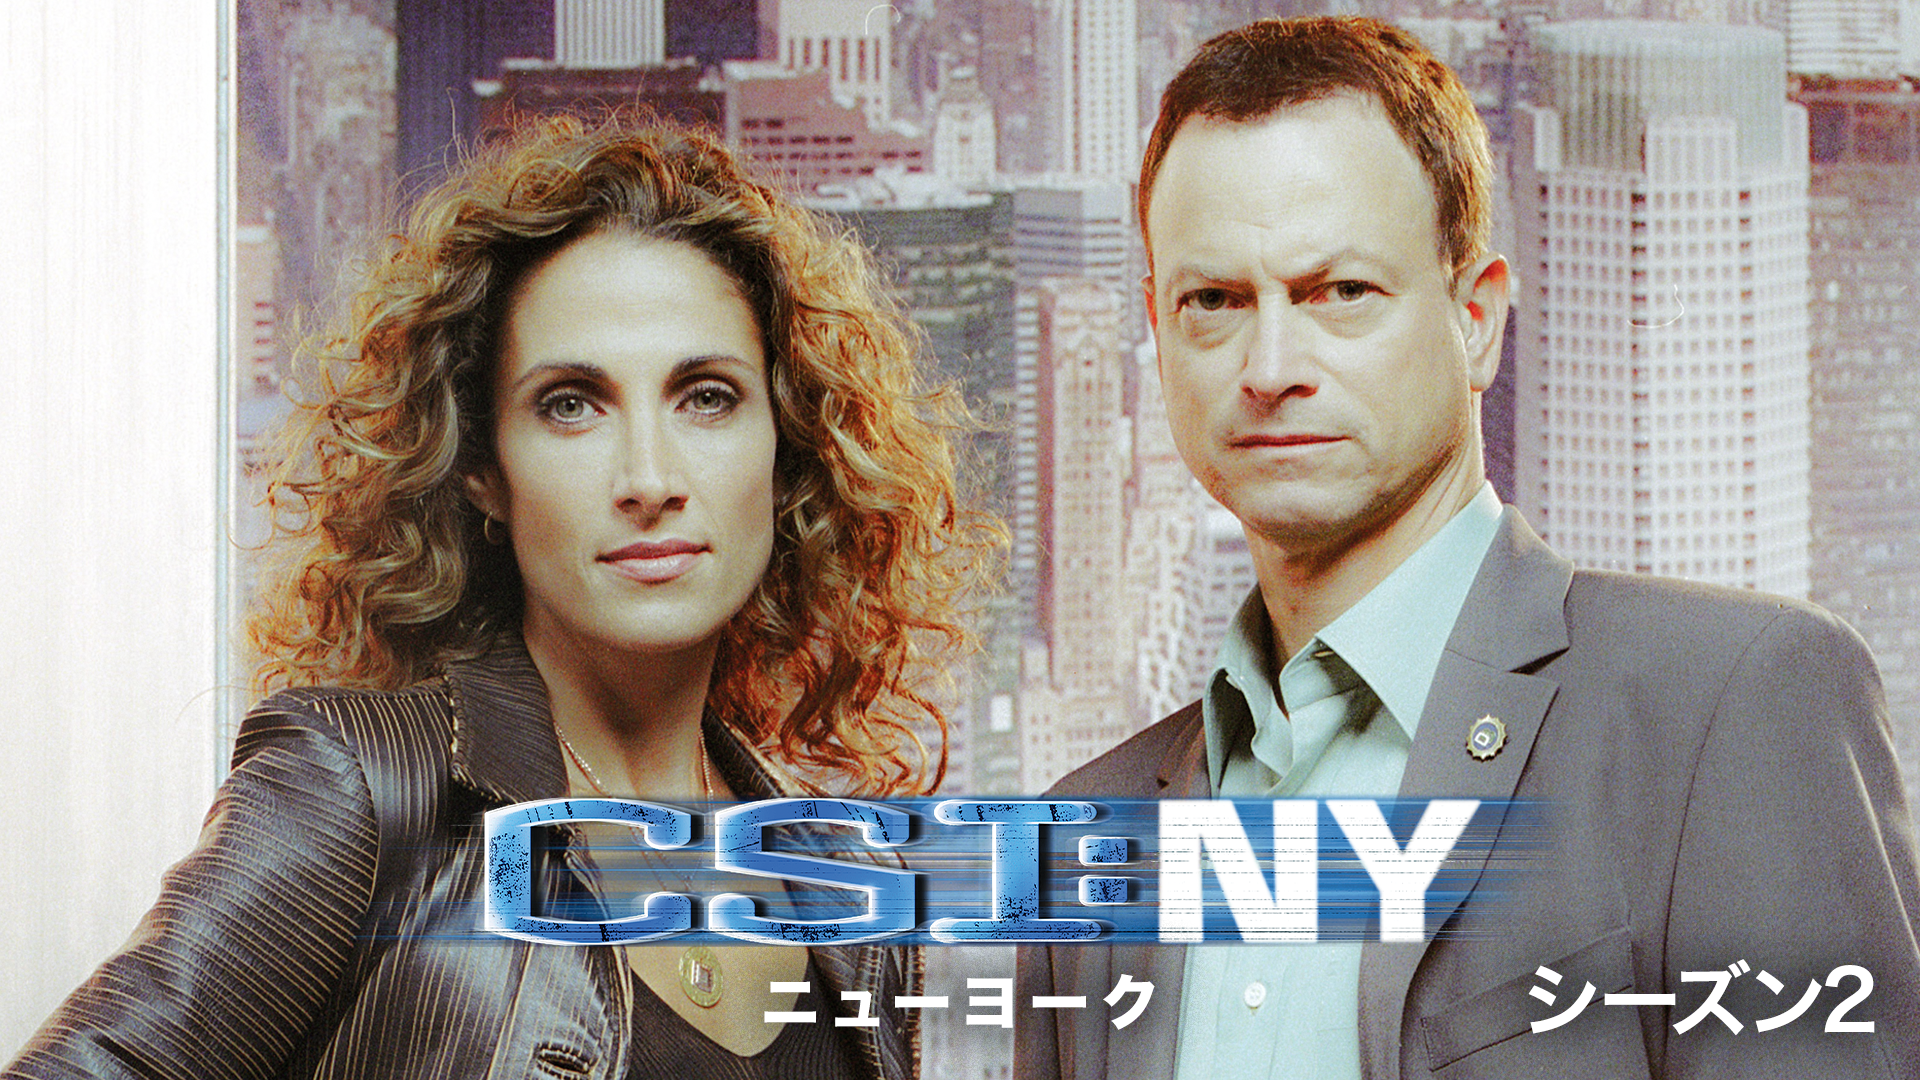 CSI：ニューヨーク シーズン5(海外ドラマ / 2008) - 動画配信 | U-NEXT 31日間無料トライアル